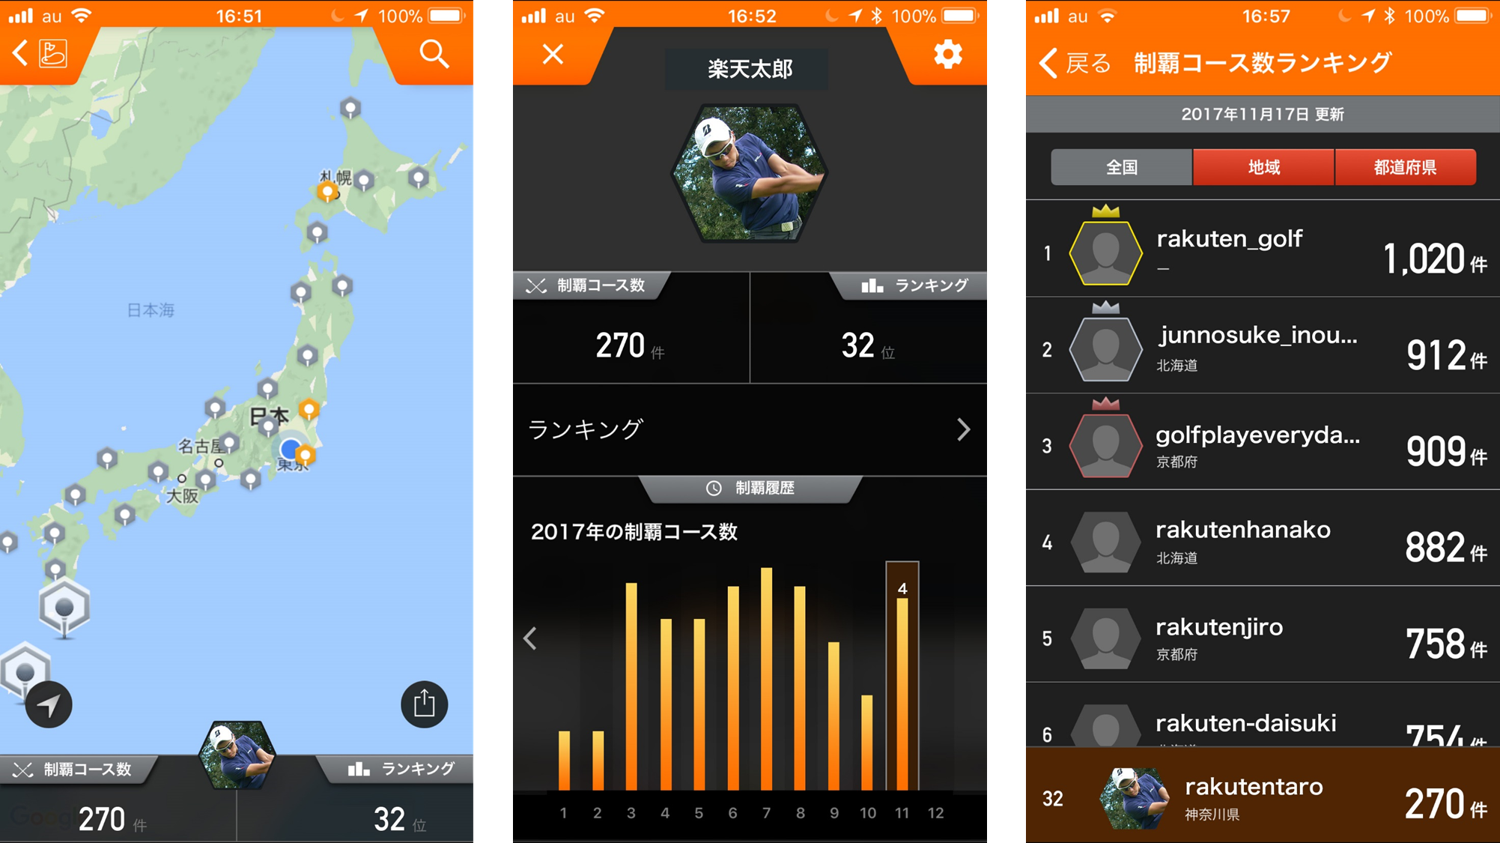 楽天gora 専用アプリに新機能 ゴルフ場制覇マップ を追加 楽天株式会社